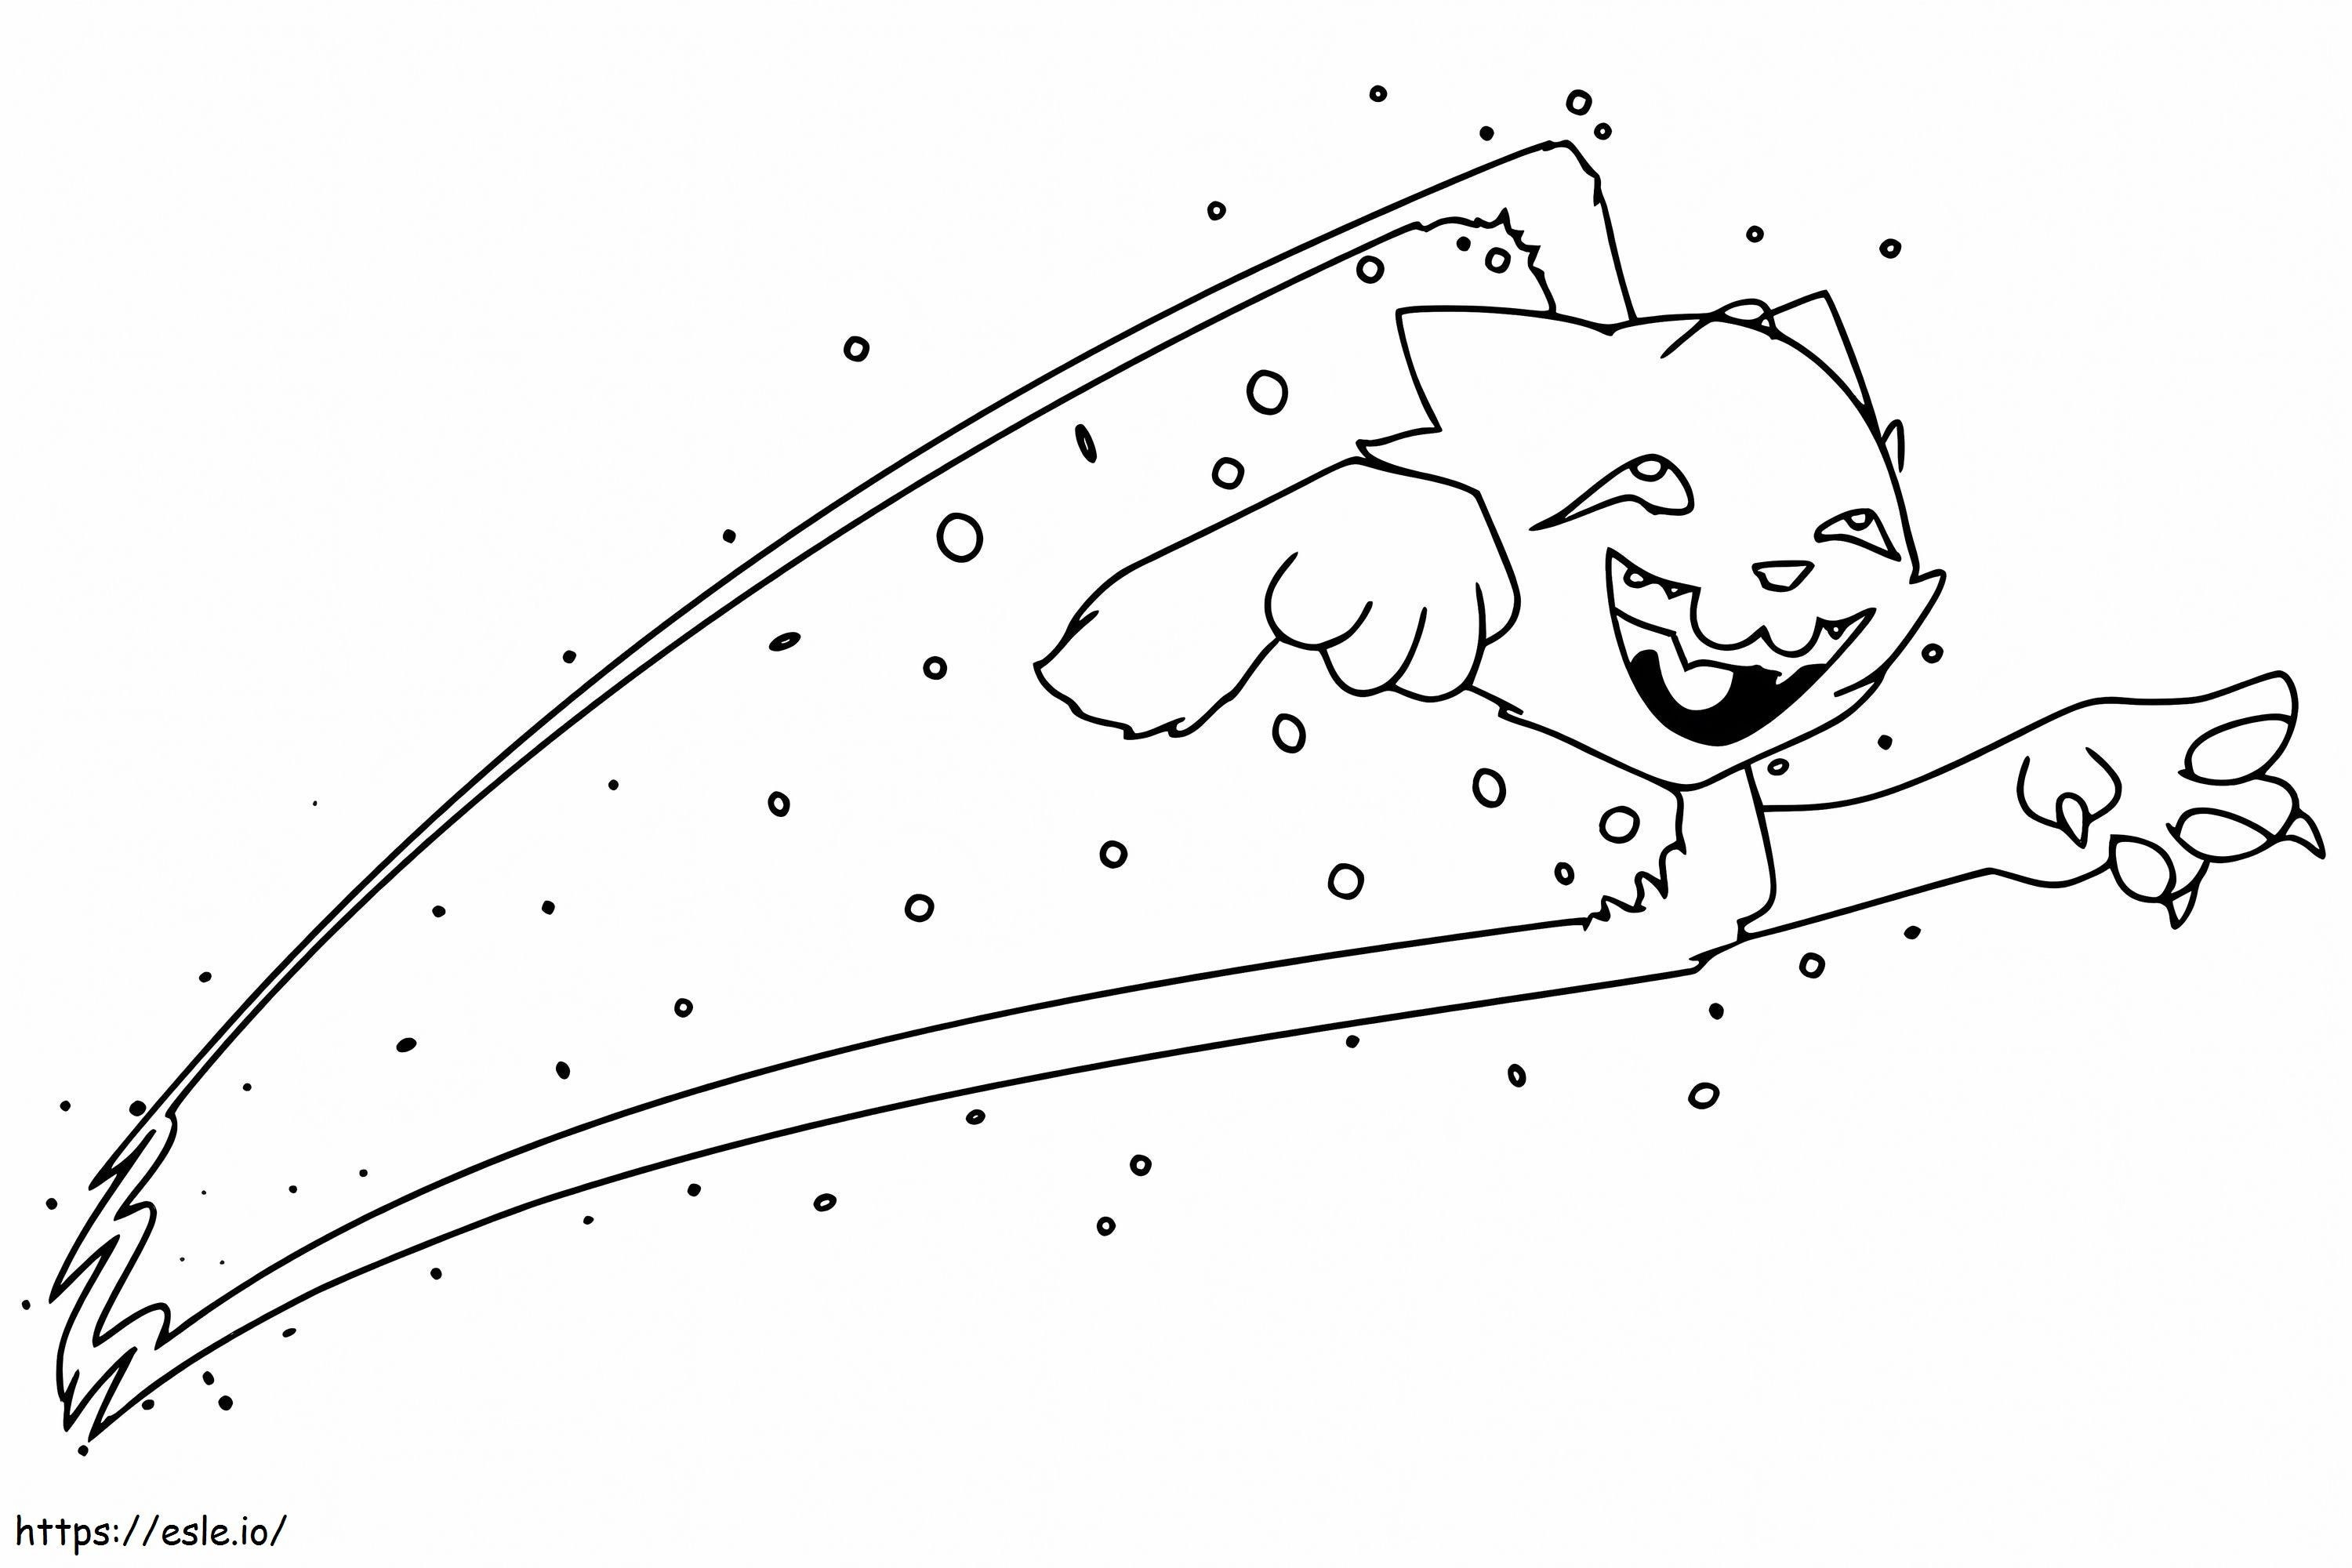 Śmieszny kot Nyan kolorowanka